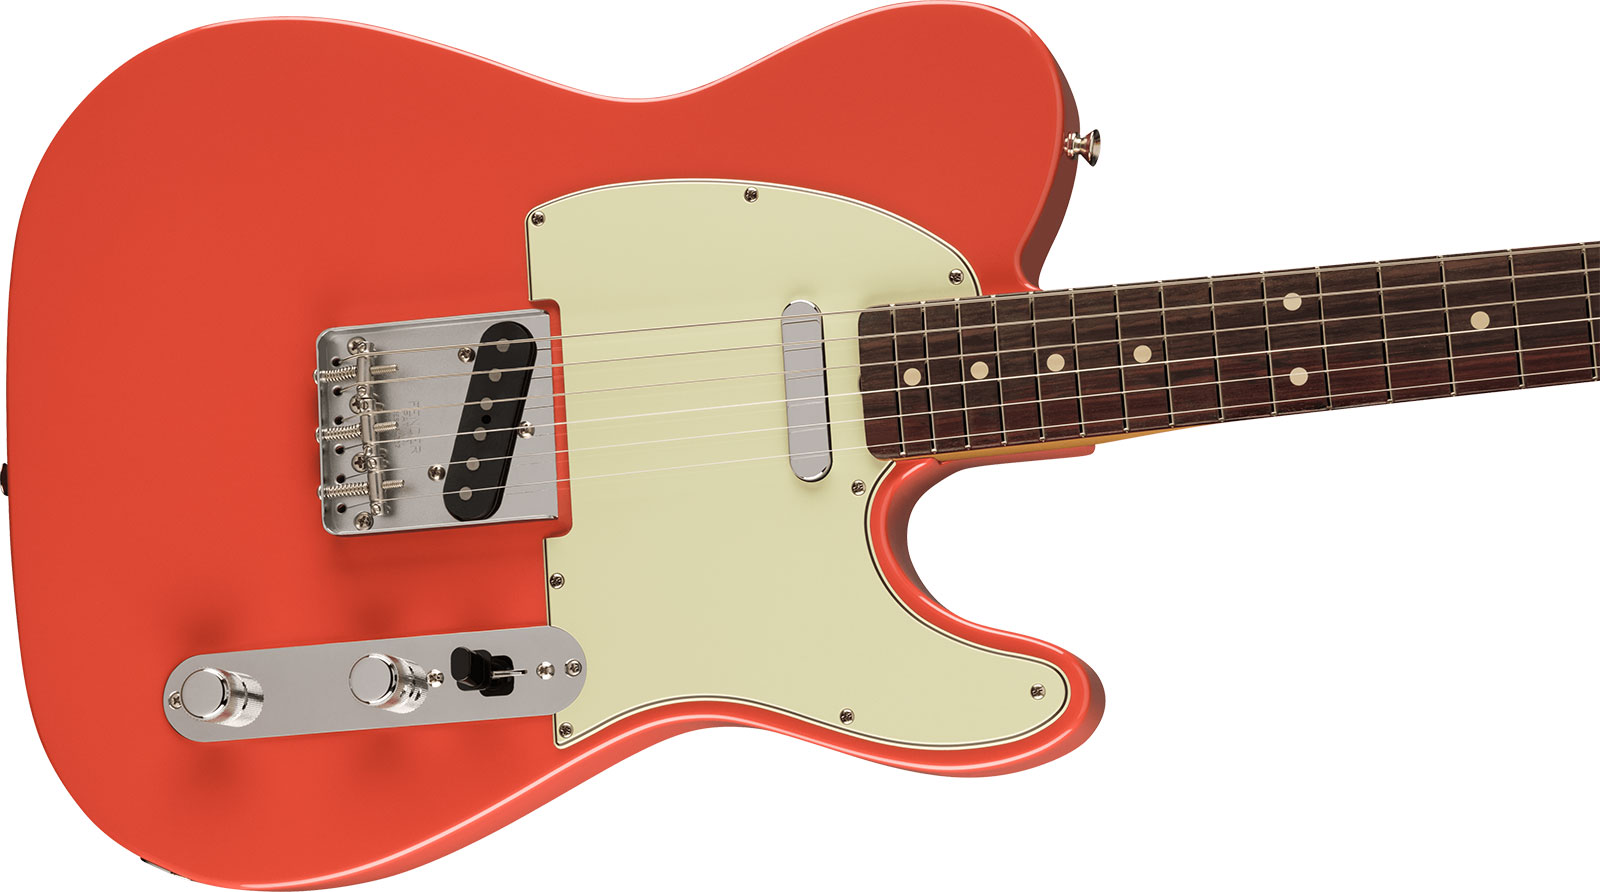 Fender Tele 60s Vintera 2 Mex 2s Ht Rw - Fiesta Red - Televorm elektrische gitaar - Variation 2